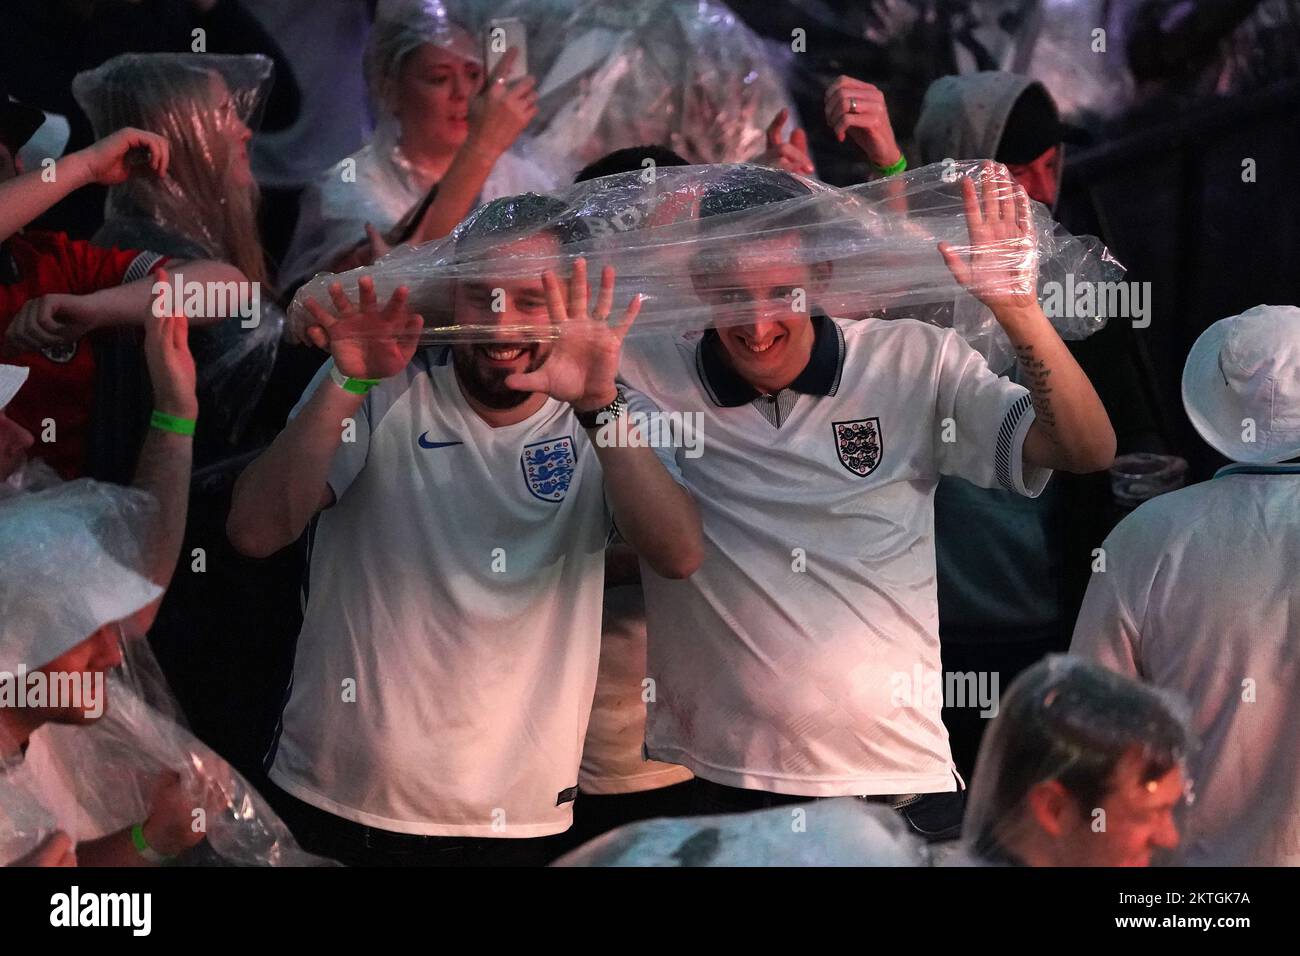 England-Fans feiern nach der letzten Partie im BoxPark Croydon während einer Vorführung des FIFA-Weltmeisterschaftsspiels Gruppe B zwischen Wales und England. Foto: Dienstag, 29. November 2022. Stockfoto